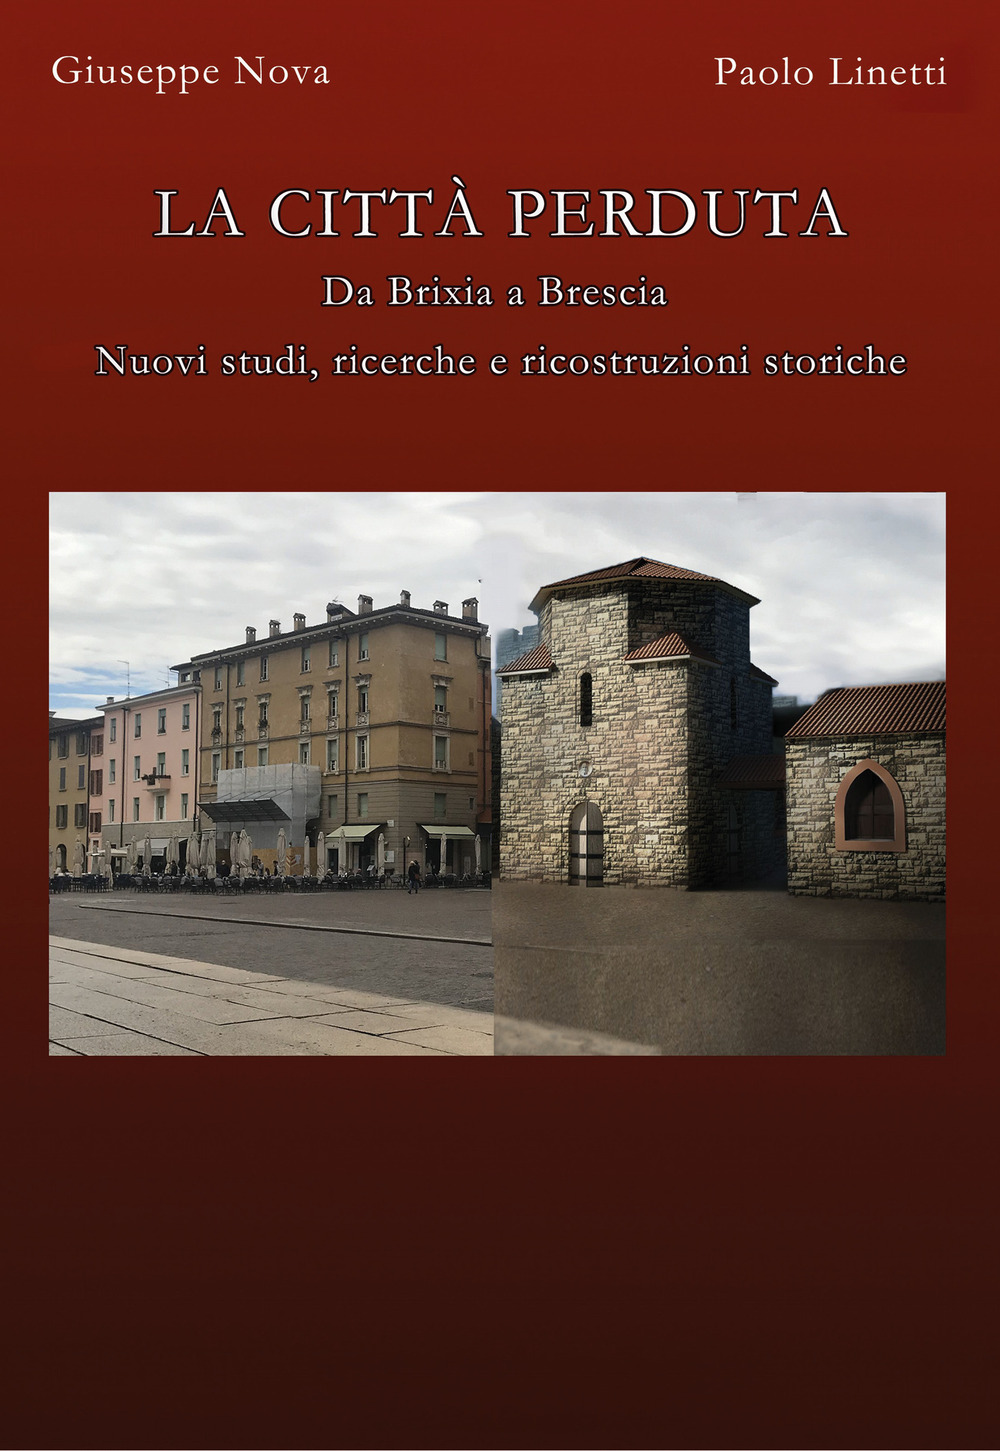 La città perduta. Da Brixia a Brescia. Nuovi studi, ricerche e ricostruzioni storiche